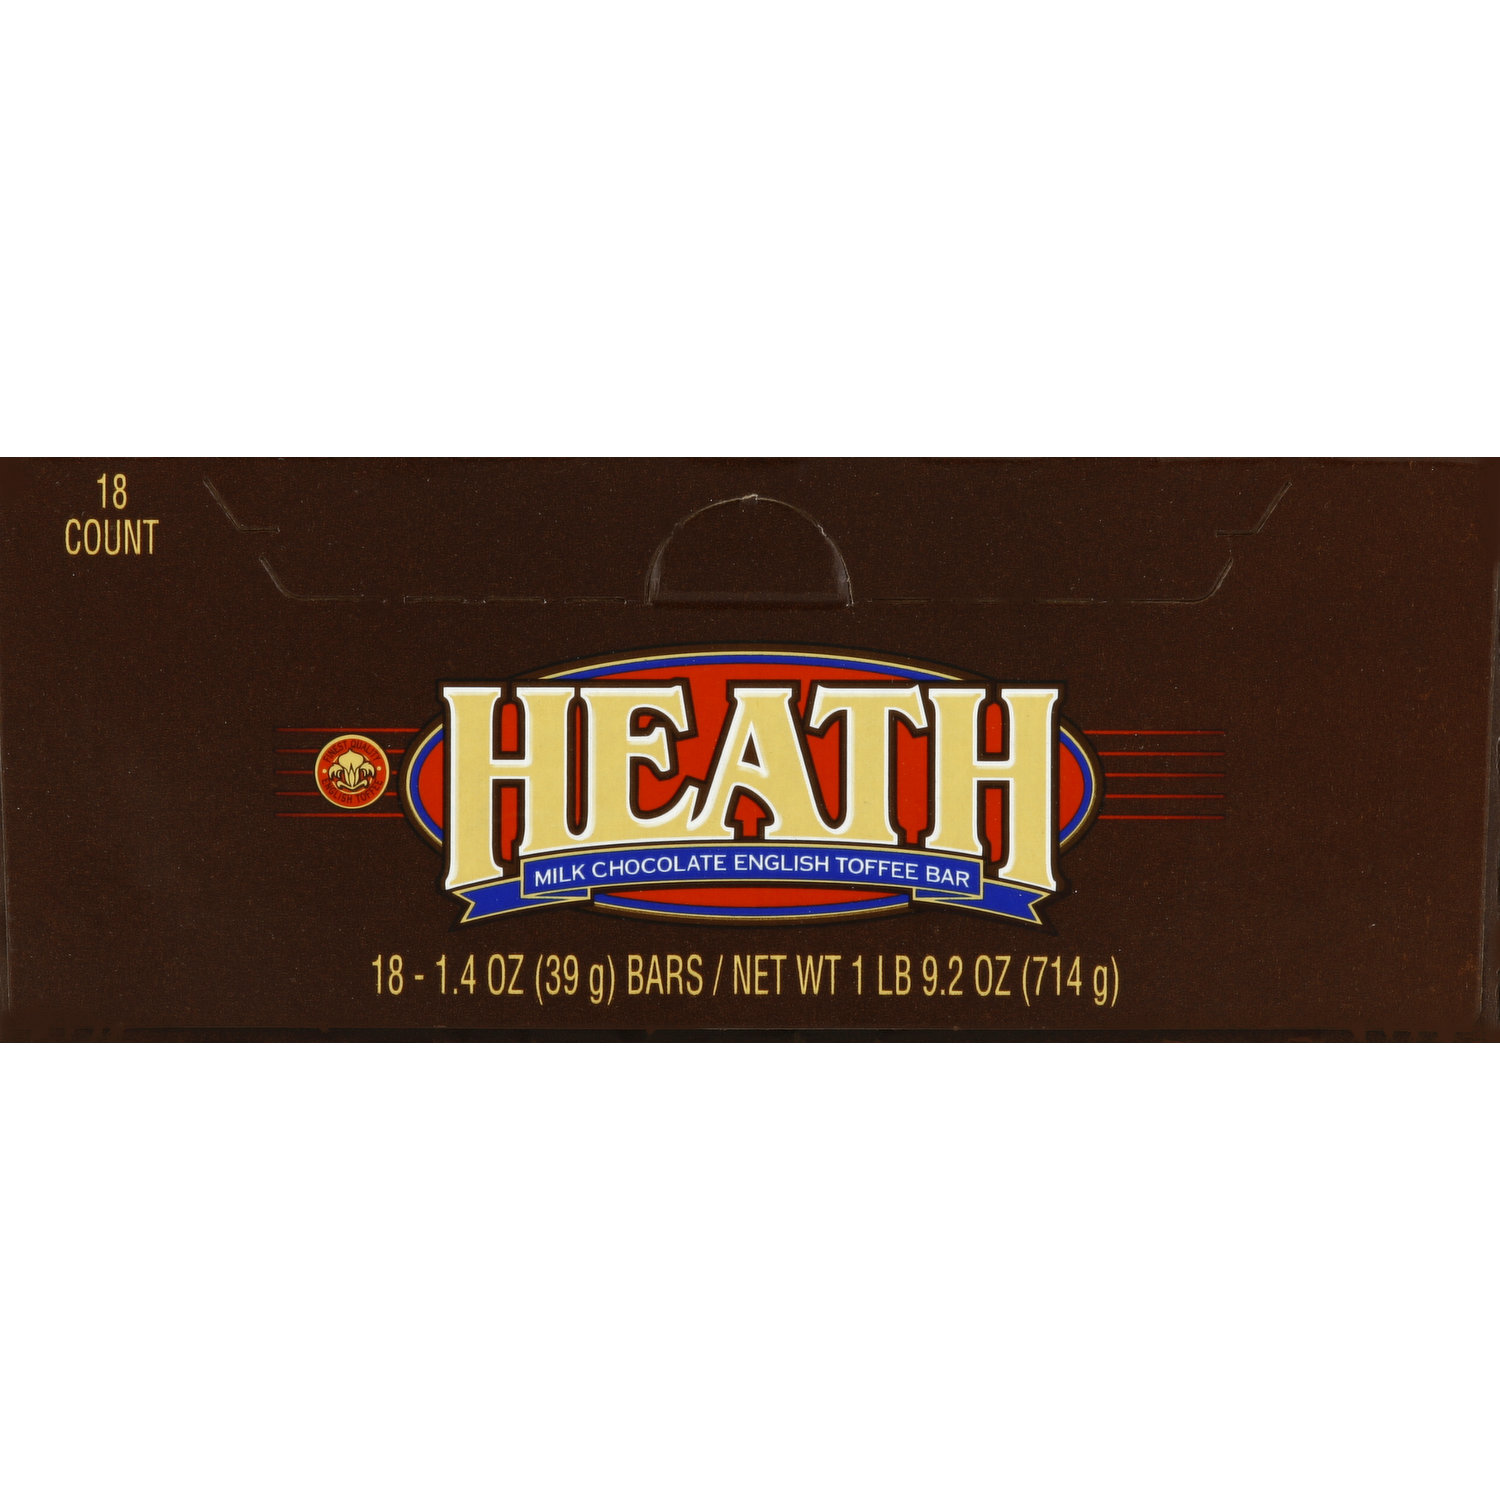 HEATH Milk Chocolate English Toffee Candy Bar, 1.4 oz